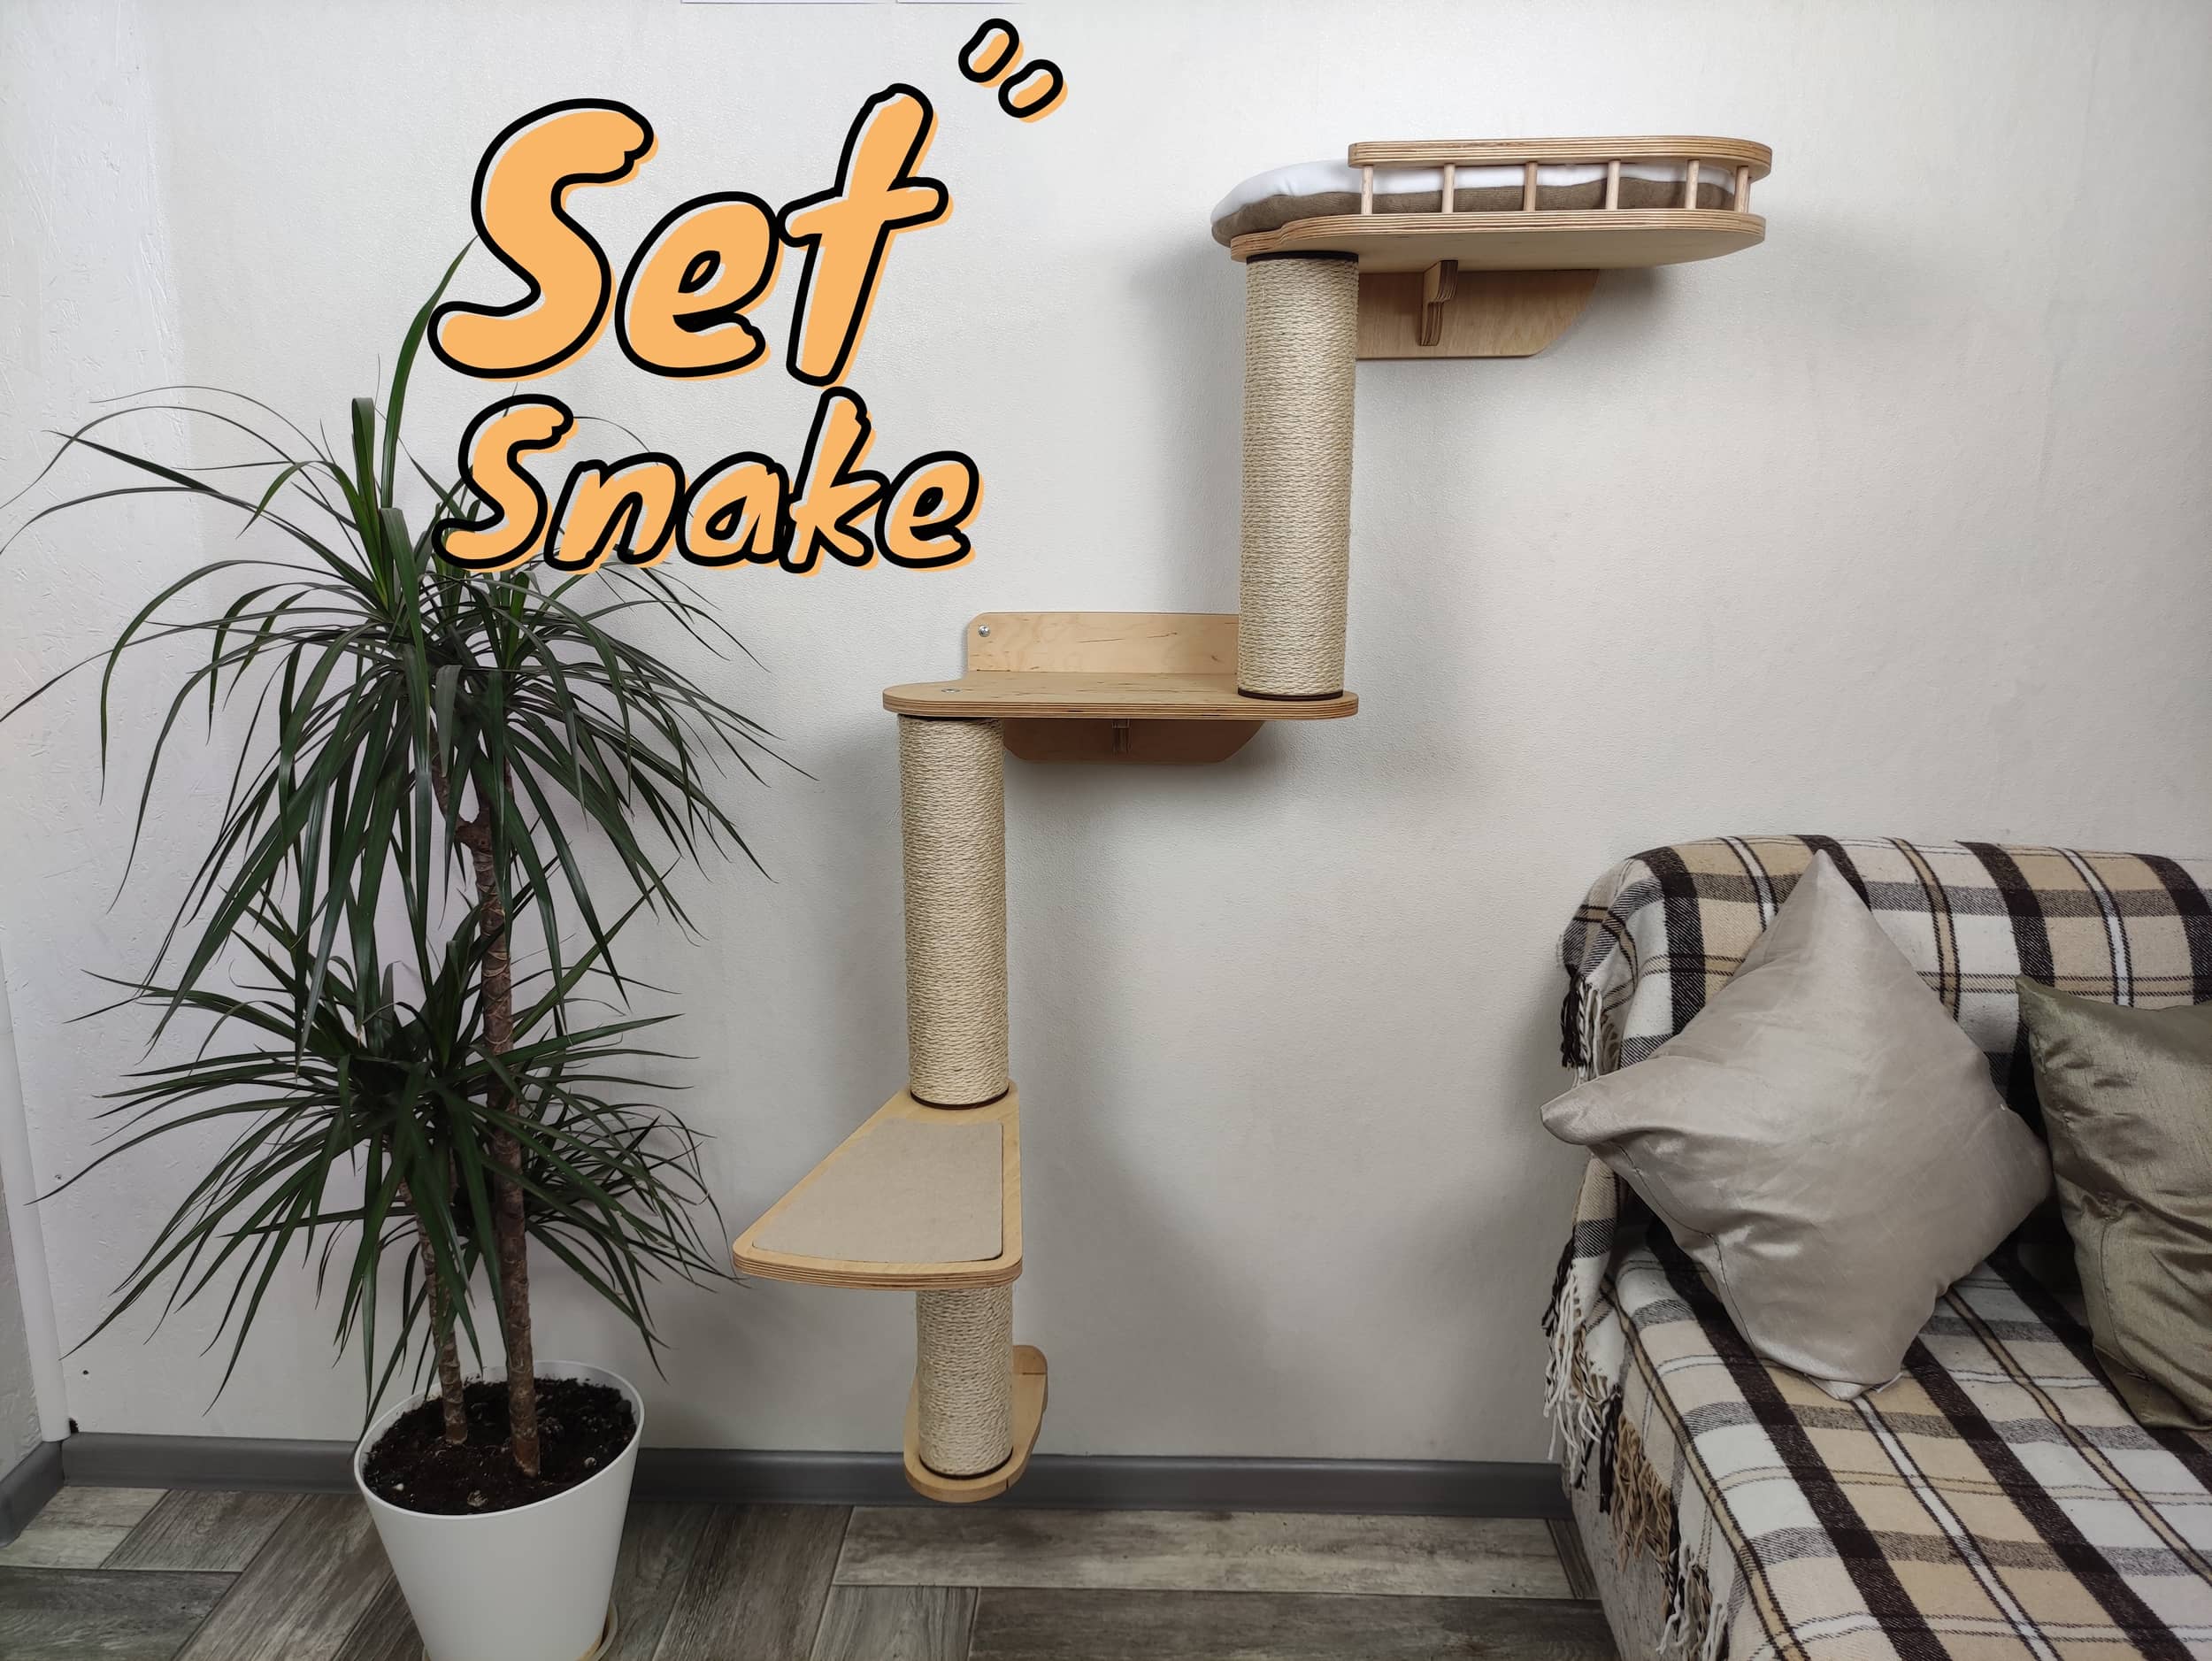 Copy of Cat furniture set "Snake" - Light